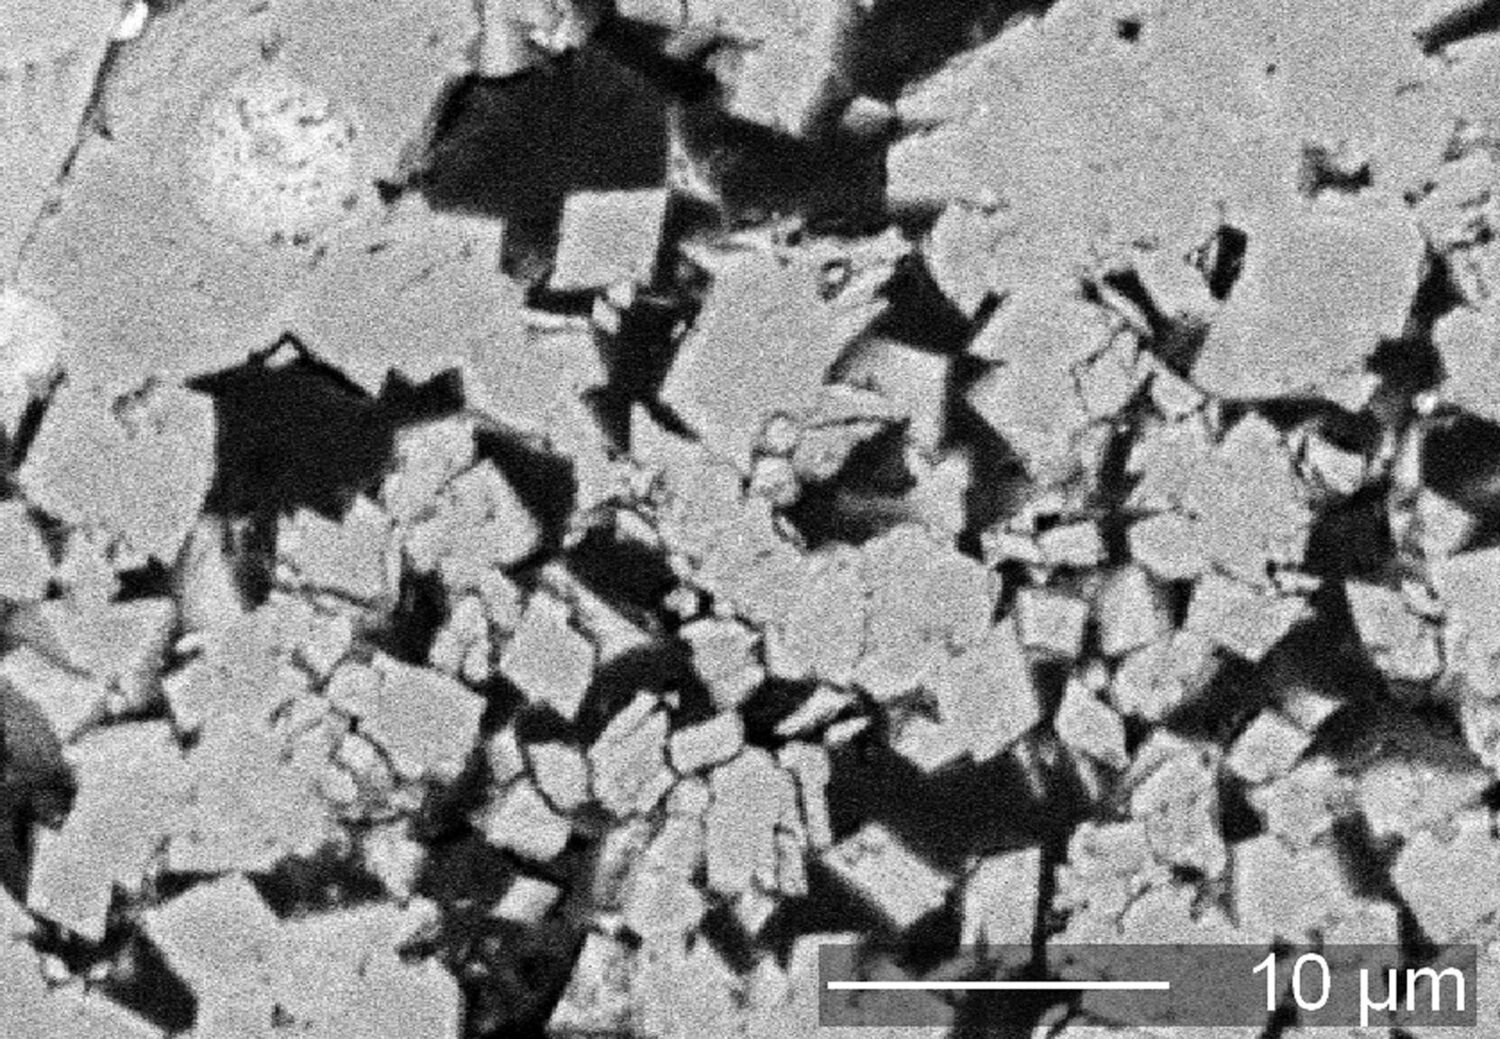 Rasterelektronenmikroskopisches Bild: Dolomitkristalle mit rhomboedrischer Form aus dem Bohrkern der Bohrung 1003 vom Nördlinger Ries